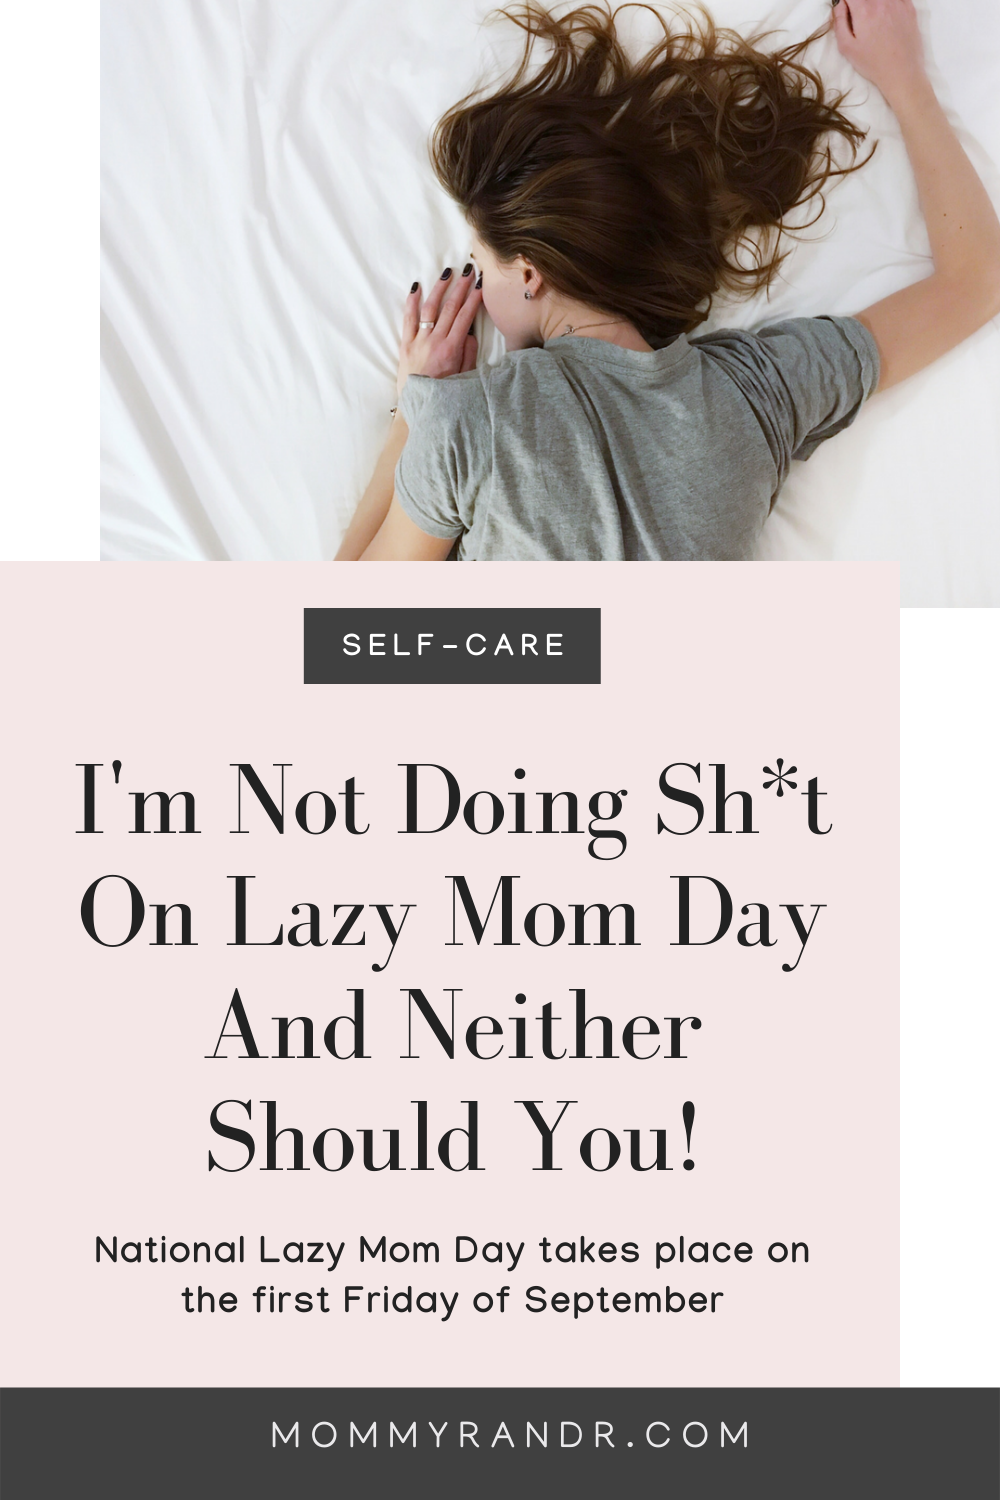 National Lazy Mom Day mommyrandr